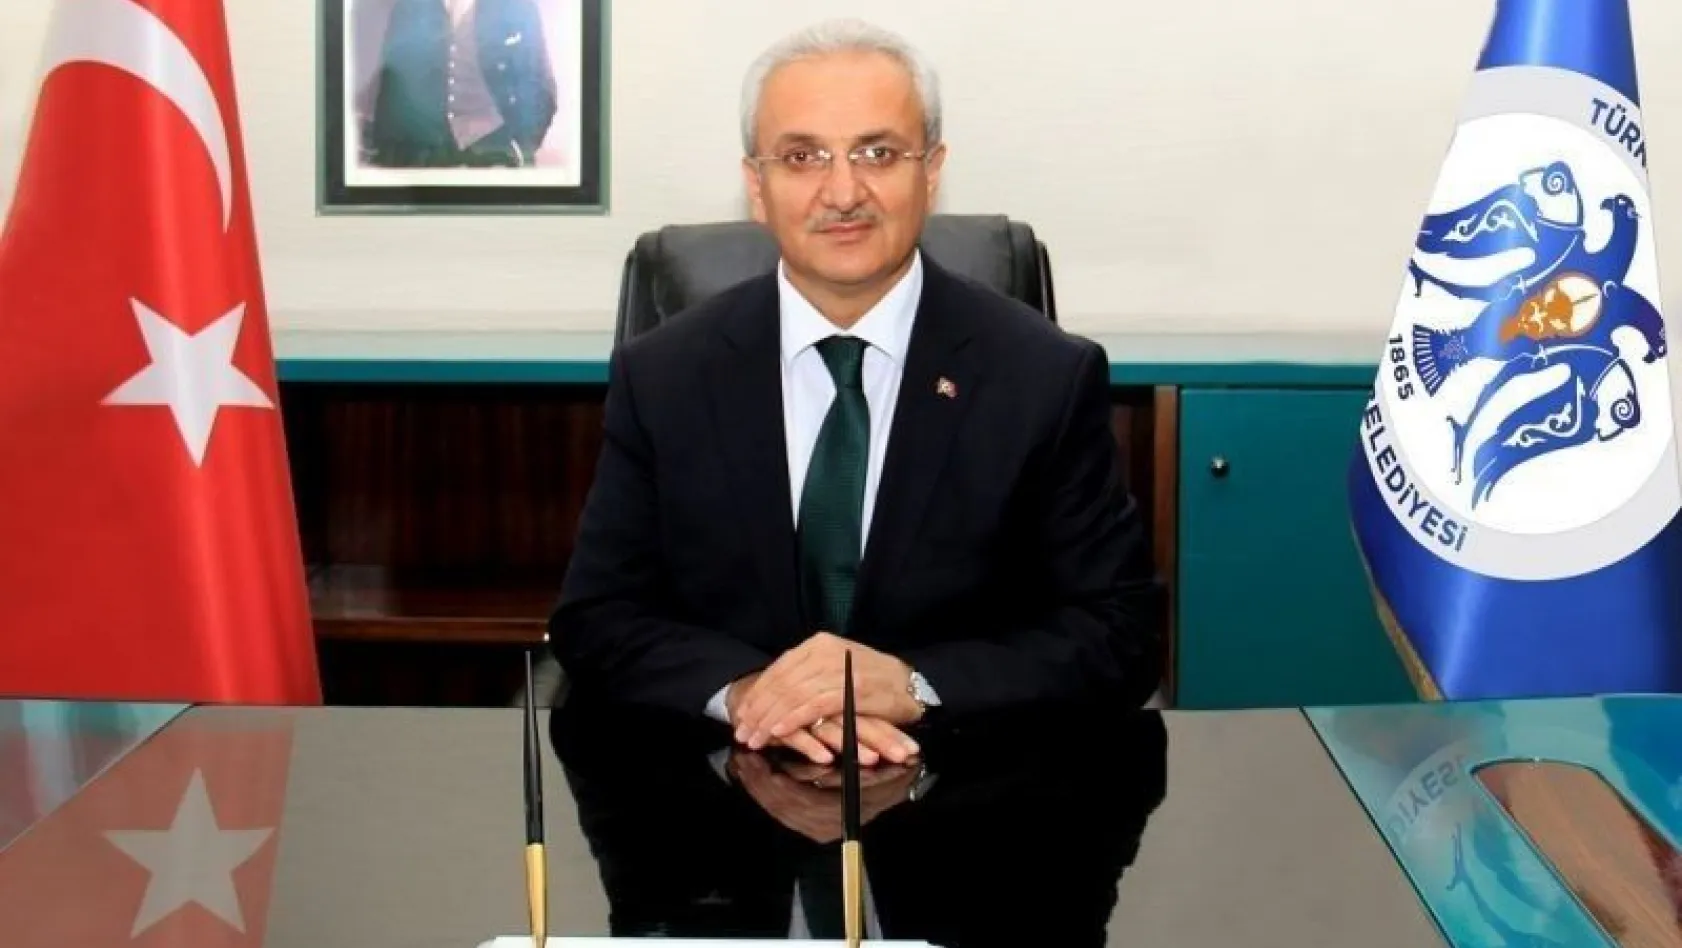 Erzincan Belediye Başkanı Başsoy'dan 10 Kasım Mesajı
